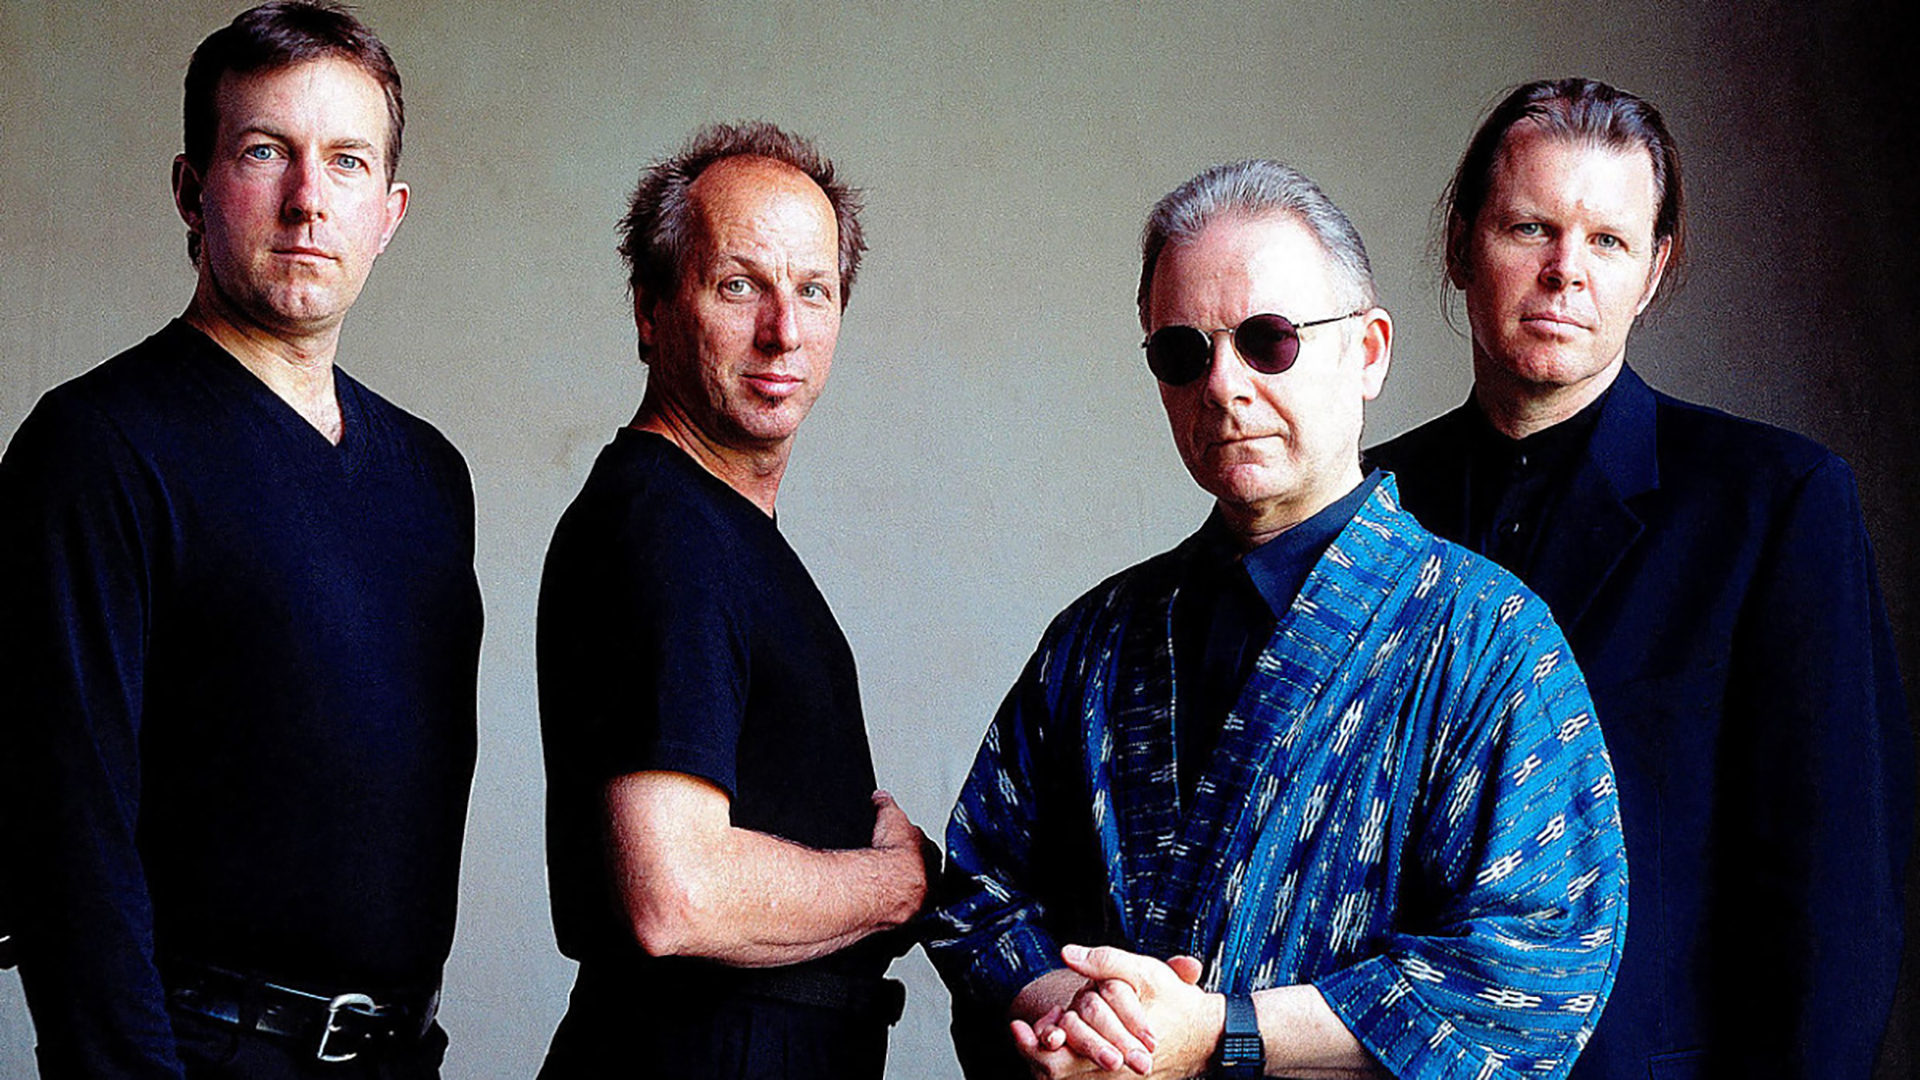 the band King Crimson